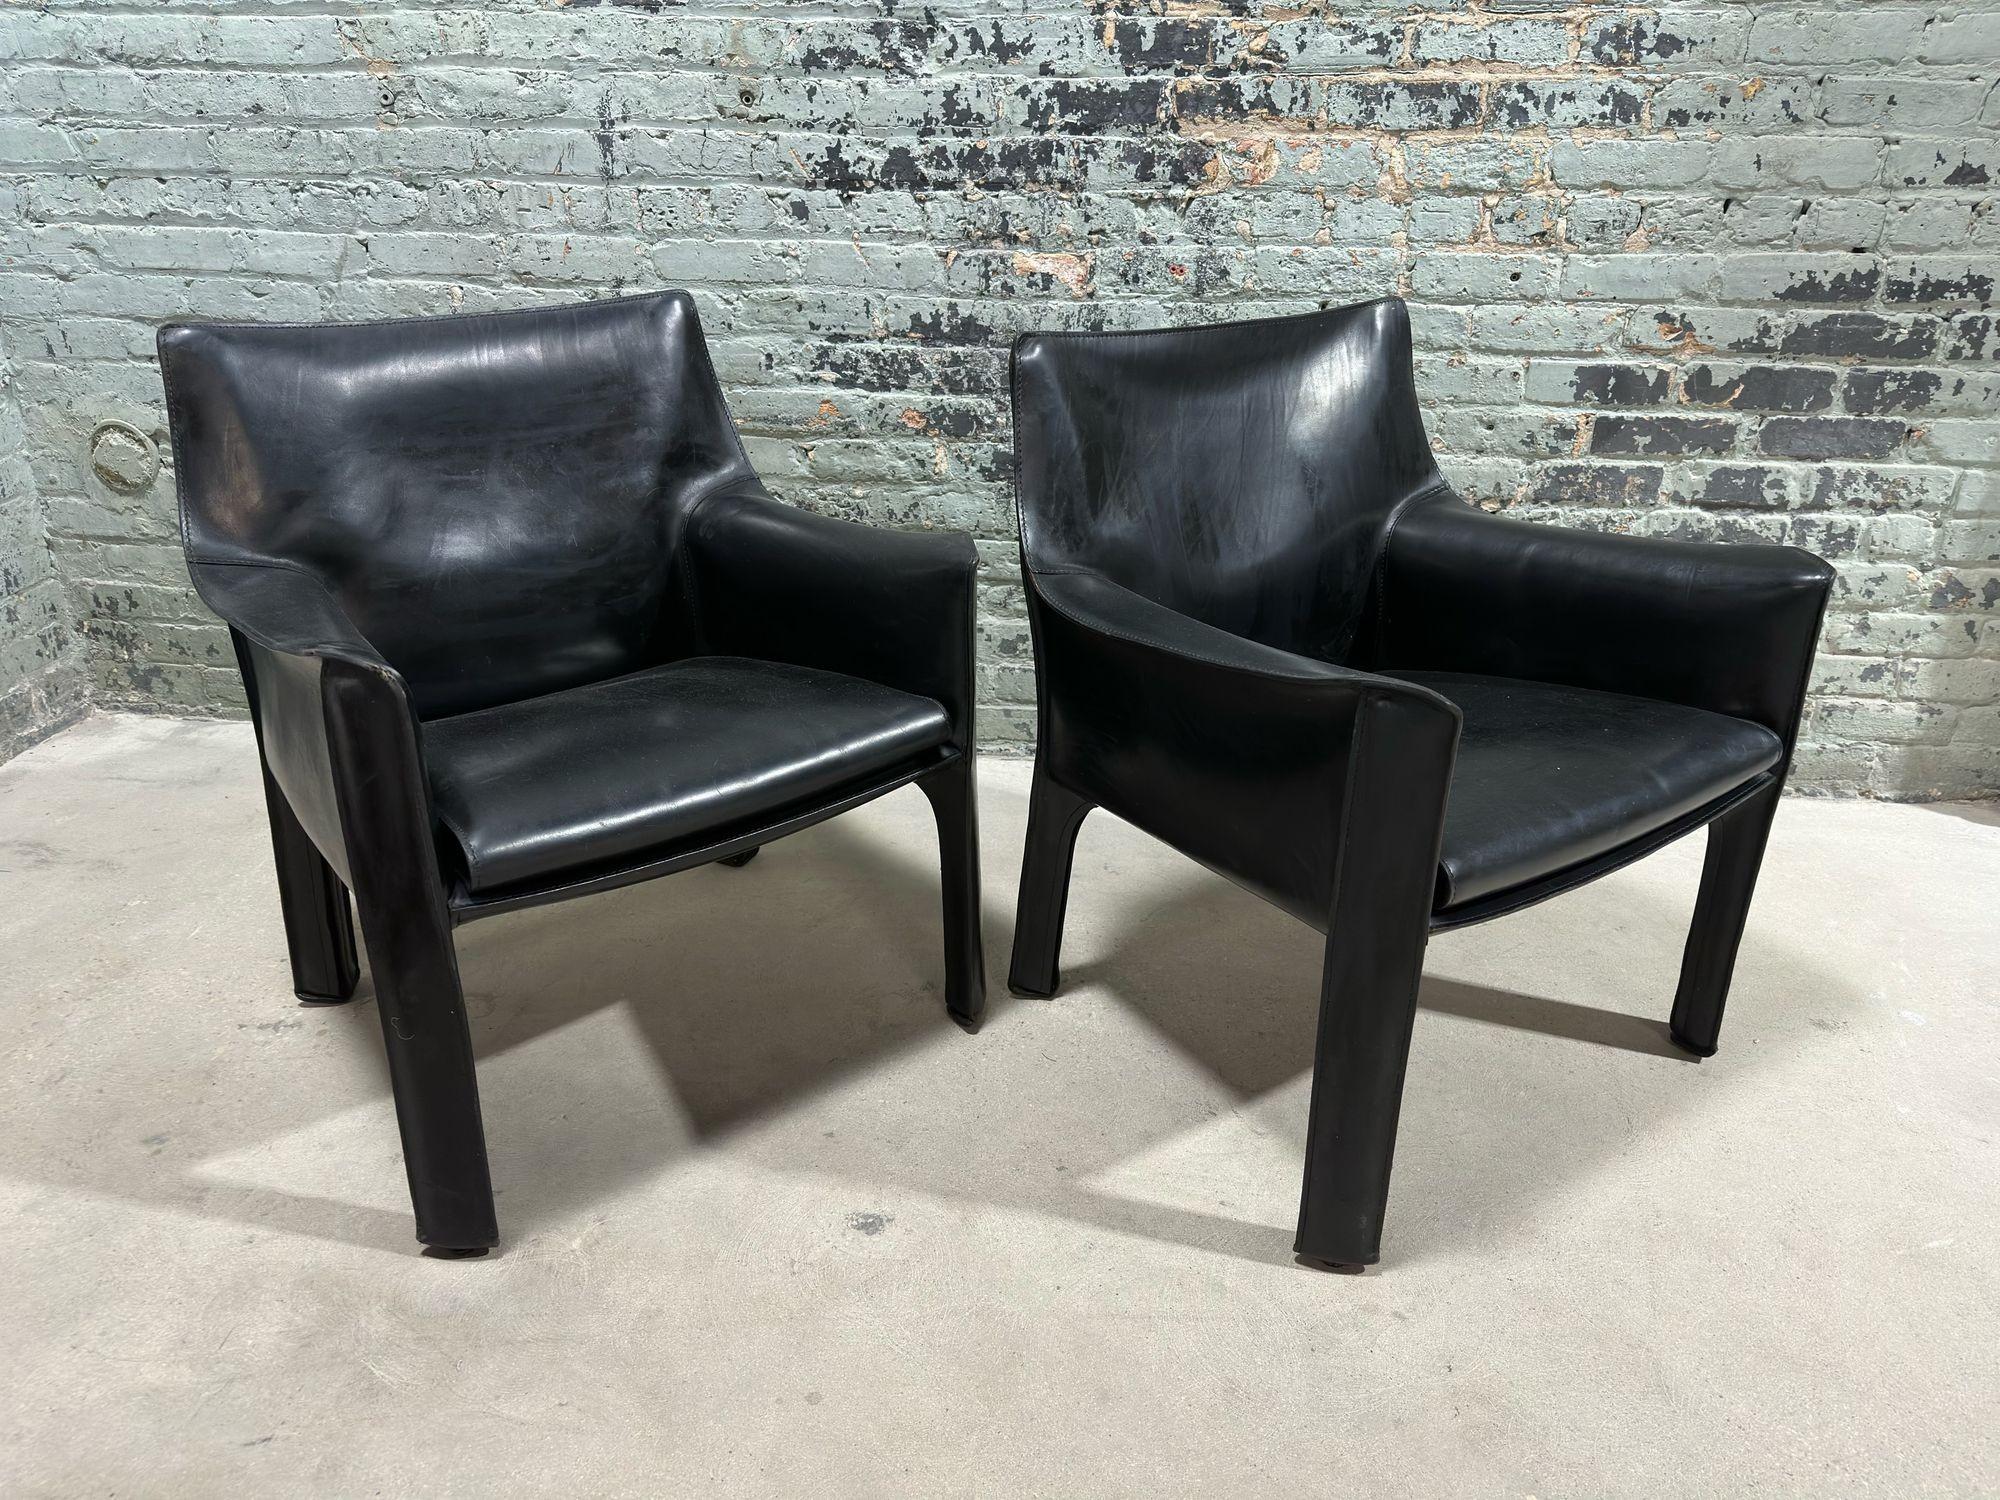 Paar Mario Bellini Kabinenstühle aus schwarzem Leder, Modell 414 für Cassina Italien, 1980er Jahre.
Die Stühle sind mit Stahlrohrrahmen und dickem Sattelleder ausgestattet. Das Leder wird mit Reißverschlüssen an der Innenseite der Beine fixiert.